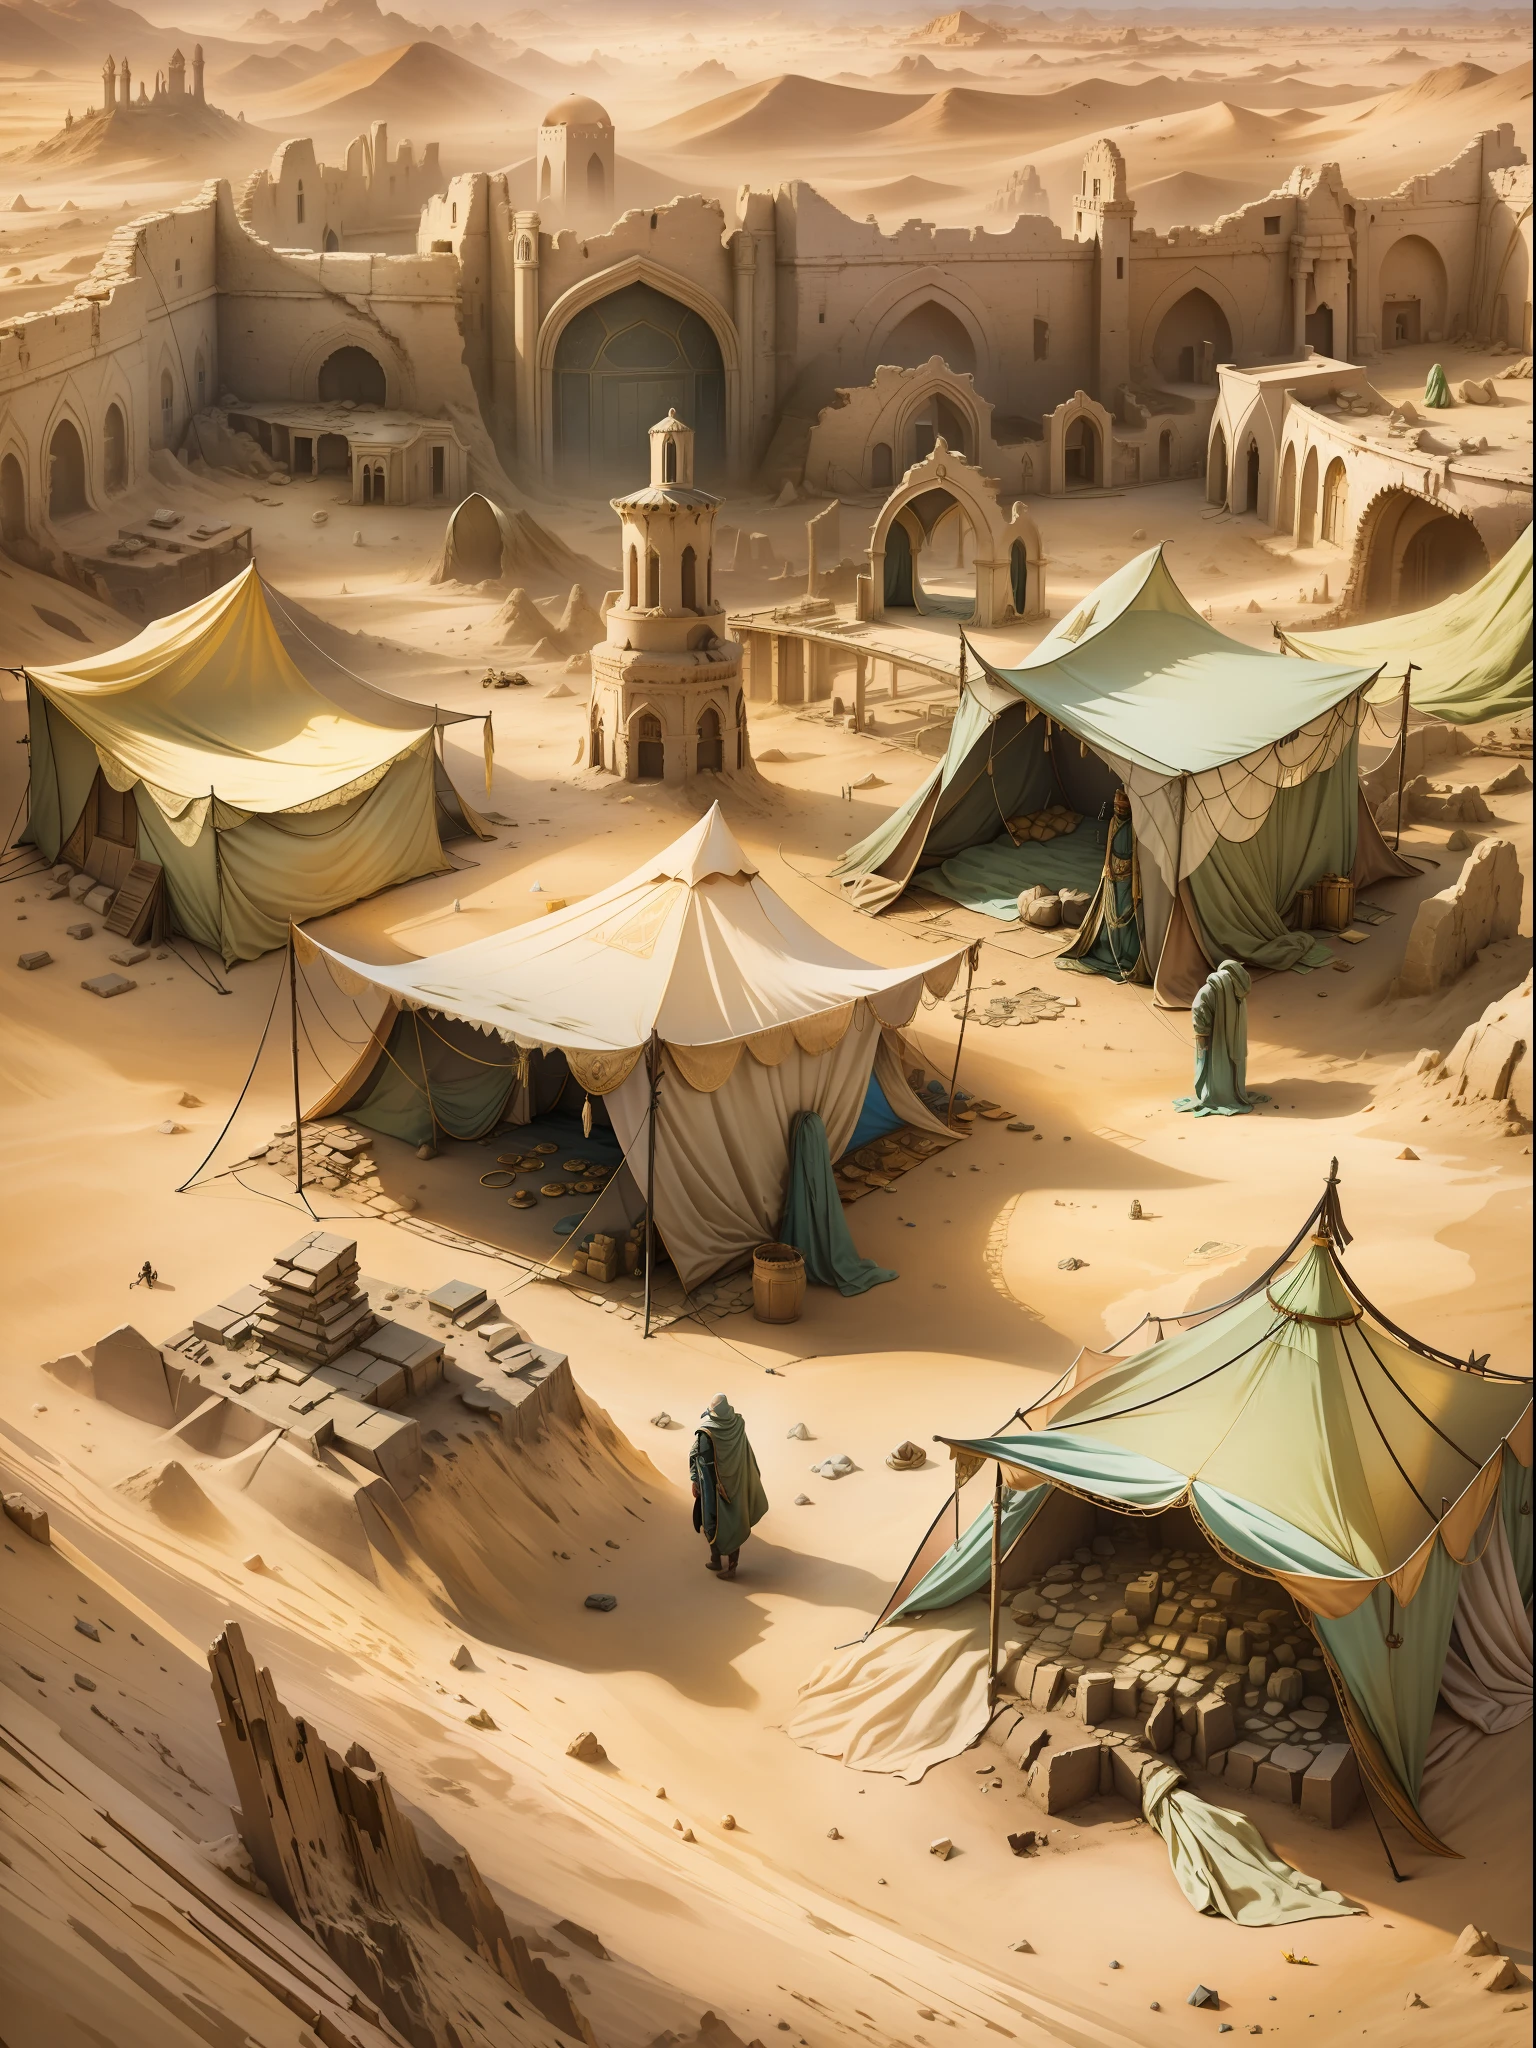 한때 위대했던 마술사의 도시의 폐허. 사막과 모래 언덕 주변, 무너진 돌을 덮으시고 망대를 가득 채우셨느니라, 표면에 아주 작은 부분만 남기고. 근처에서 폐허 깊은 곳으로 들어가는 검은 입구를 볼 수 있습니다.. 입구 근처에는 작은 텐트 캠프가 있습니다., 텐트 옆에는 상자와 테이블이 있습니다.. 텐트 근처에서 말린 것을 볼 수 있습니다., 피묻은 발자국, 텐트 속으로 깊숙히 들어가다